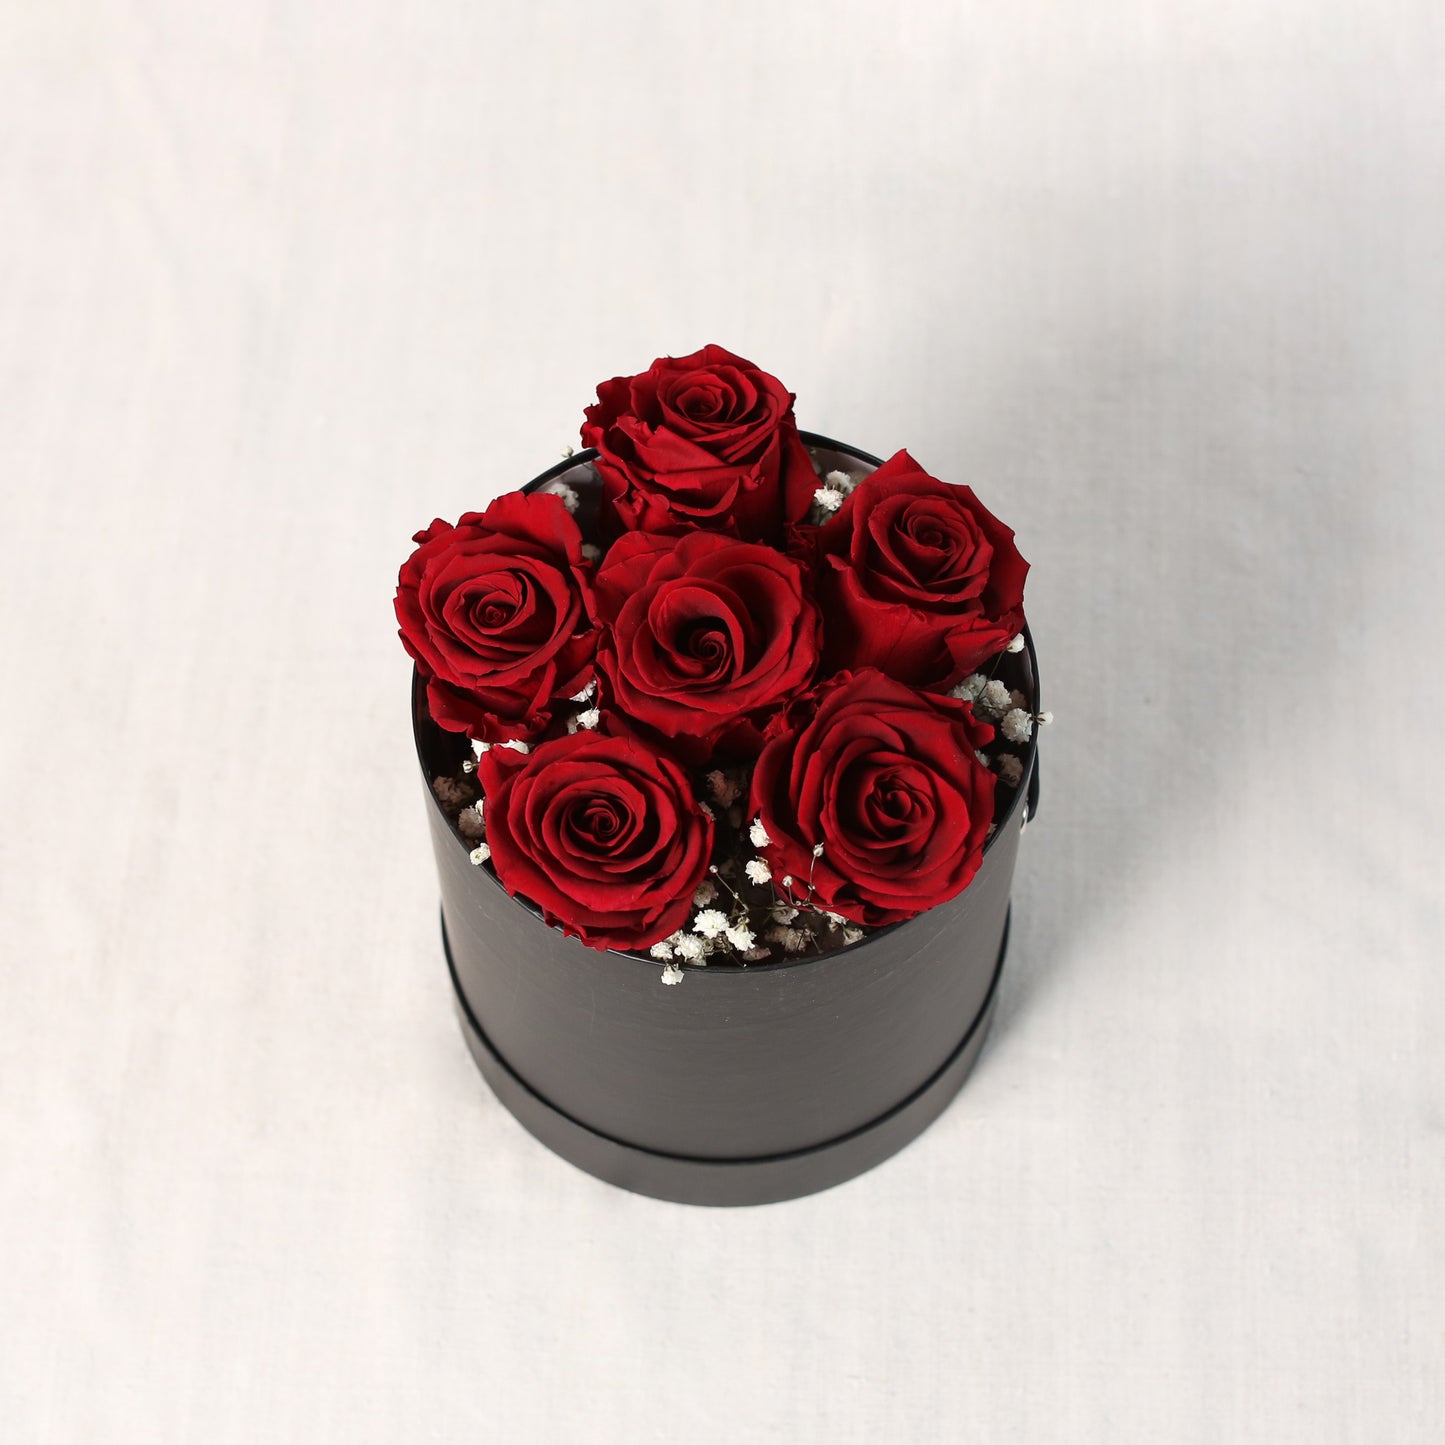 Schräge Draufsicht-eine edle, runde, schwarze Zylinder- Box mit roten, gefriergetrockneten Rosen und Schleierkraut